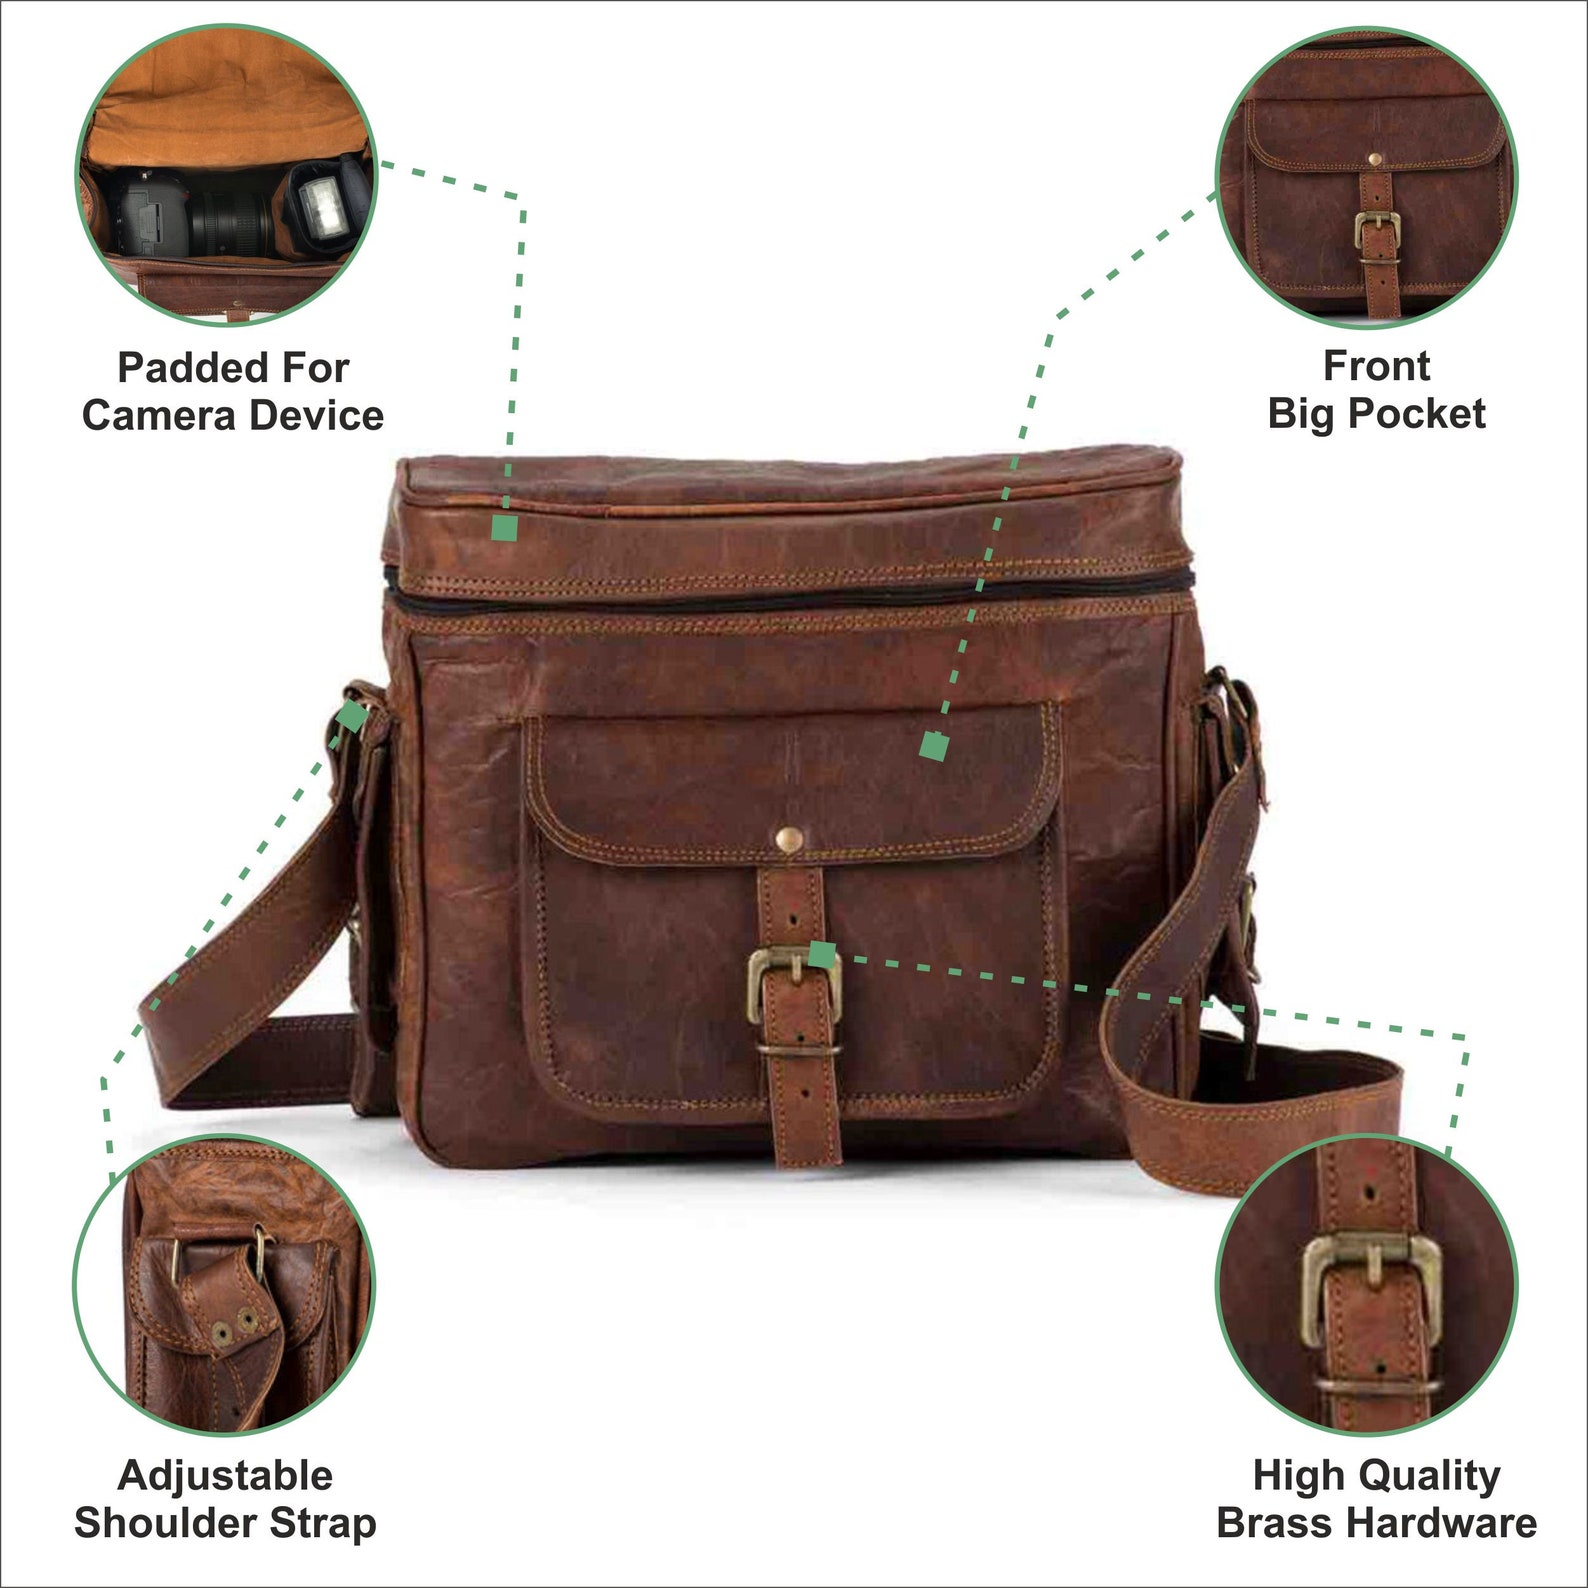 10 Inch Leather Camera Bag Camera Satchel Bag Vintage | Etsy